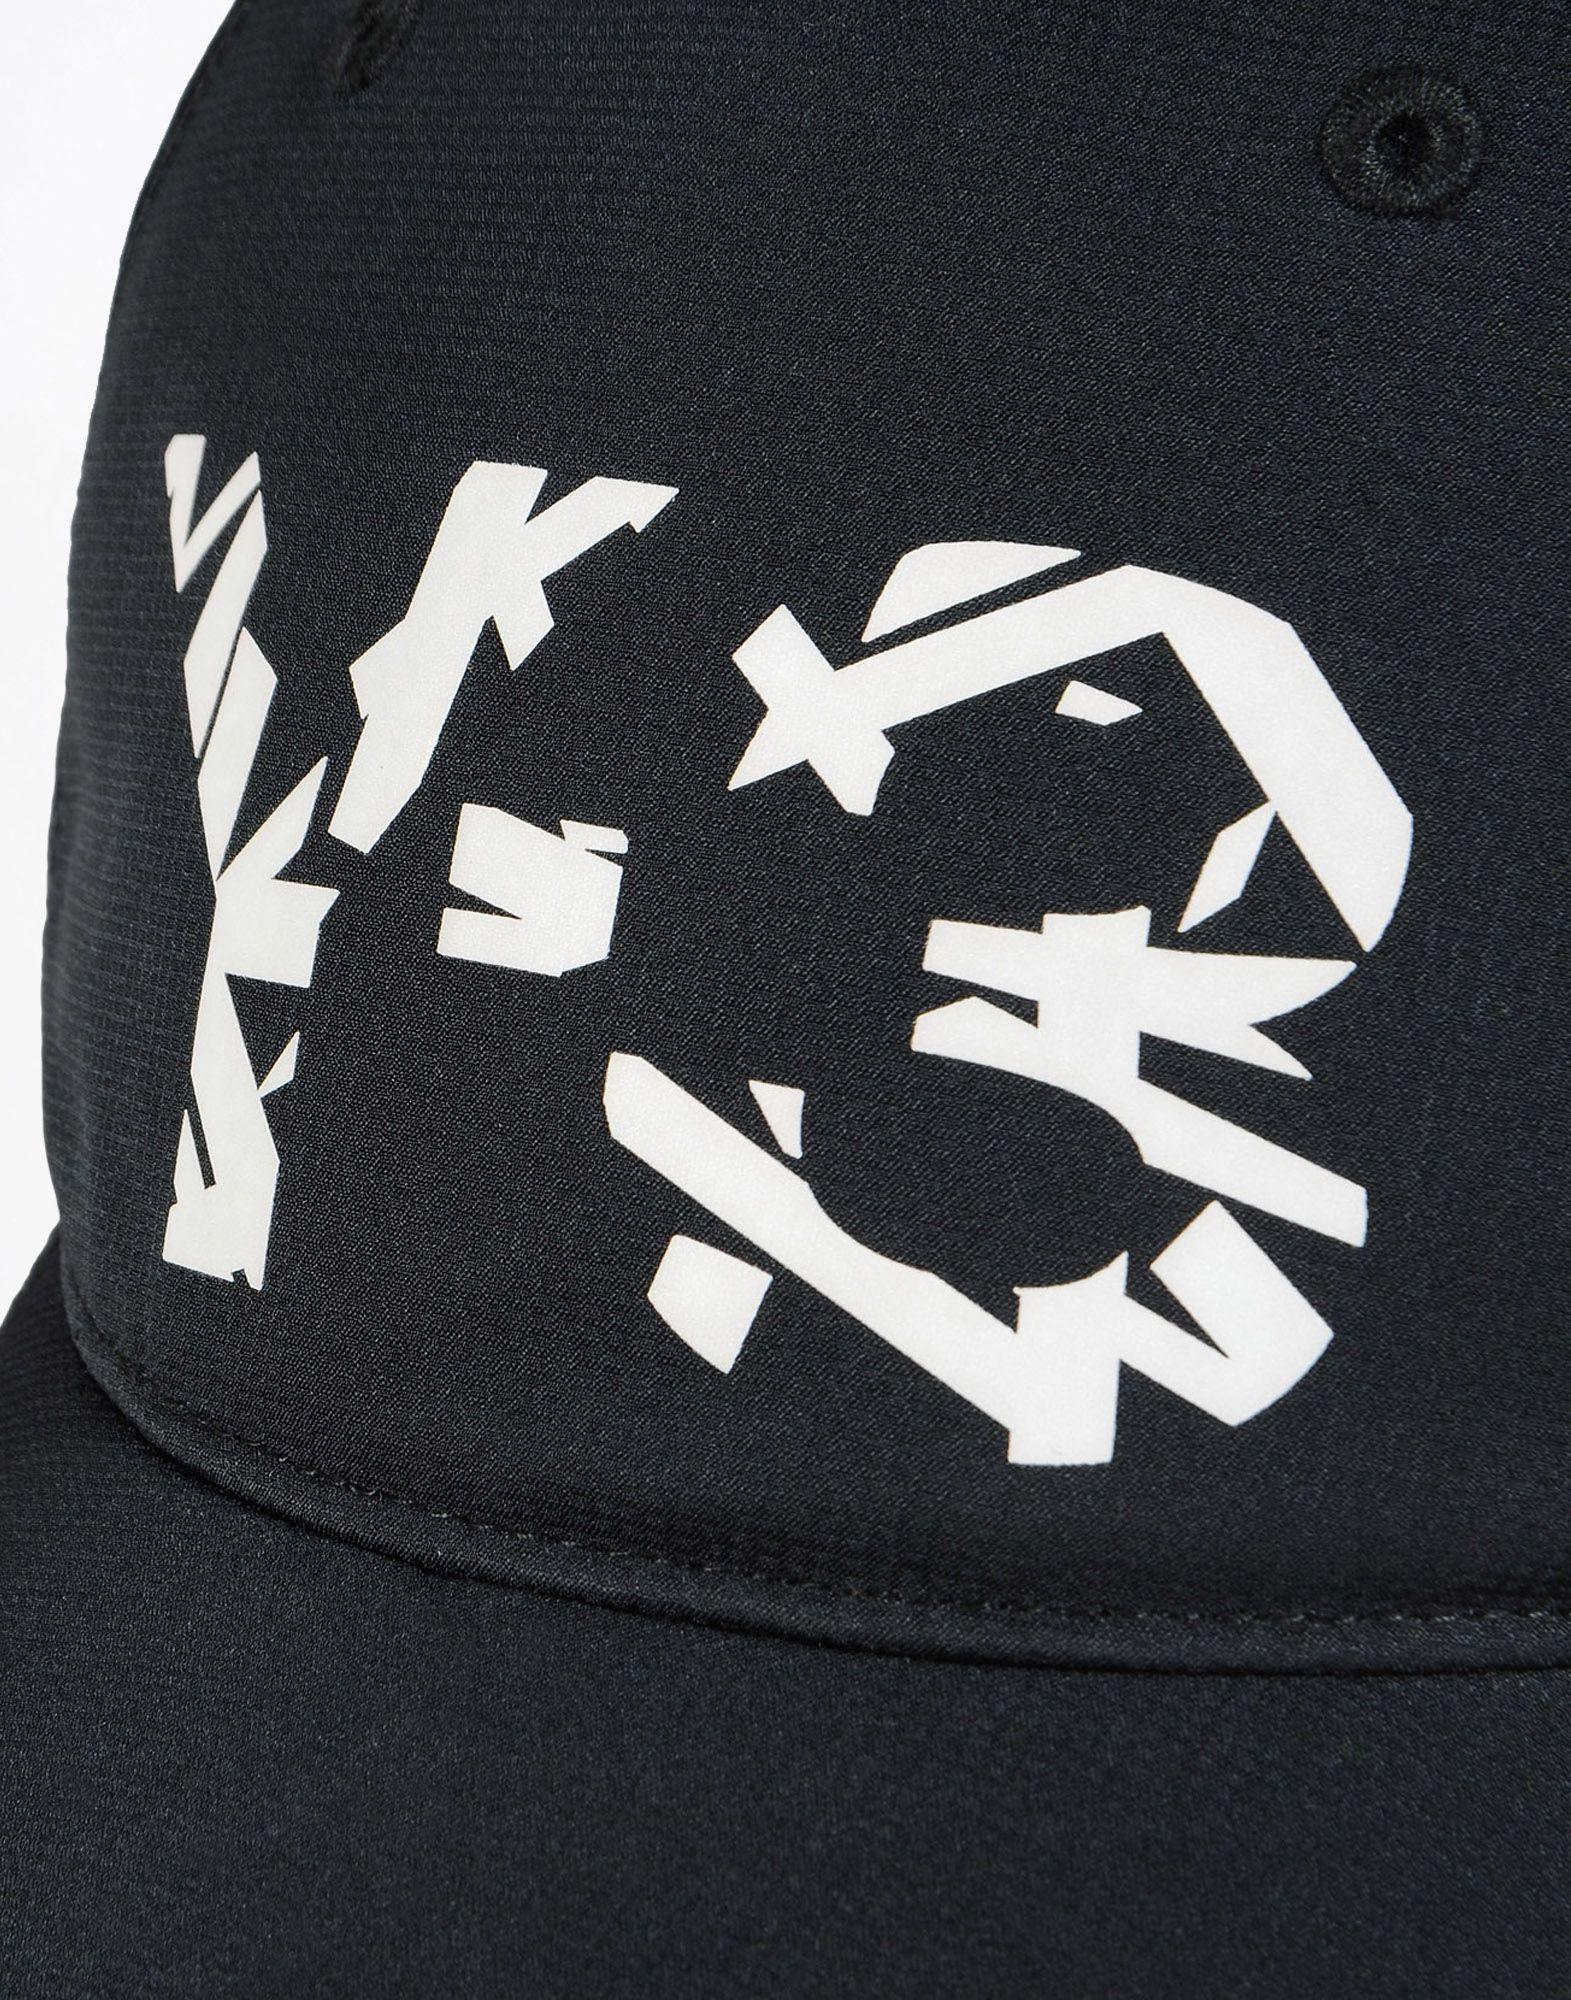 Y-3 Logo - Y 3 LOGO CAP Caps. Adidas Y 3 Official Site